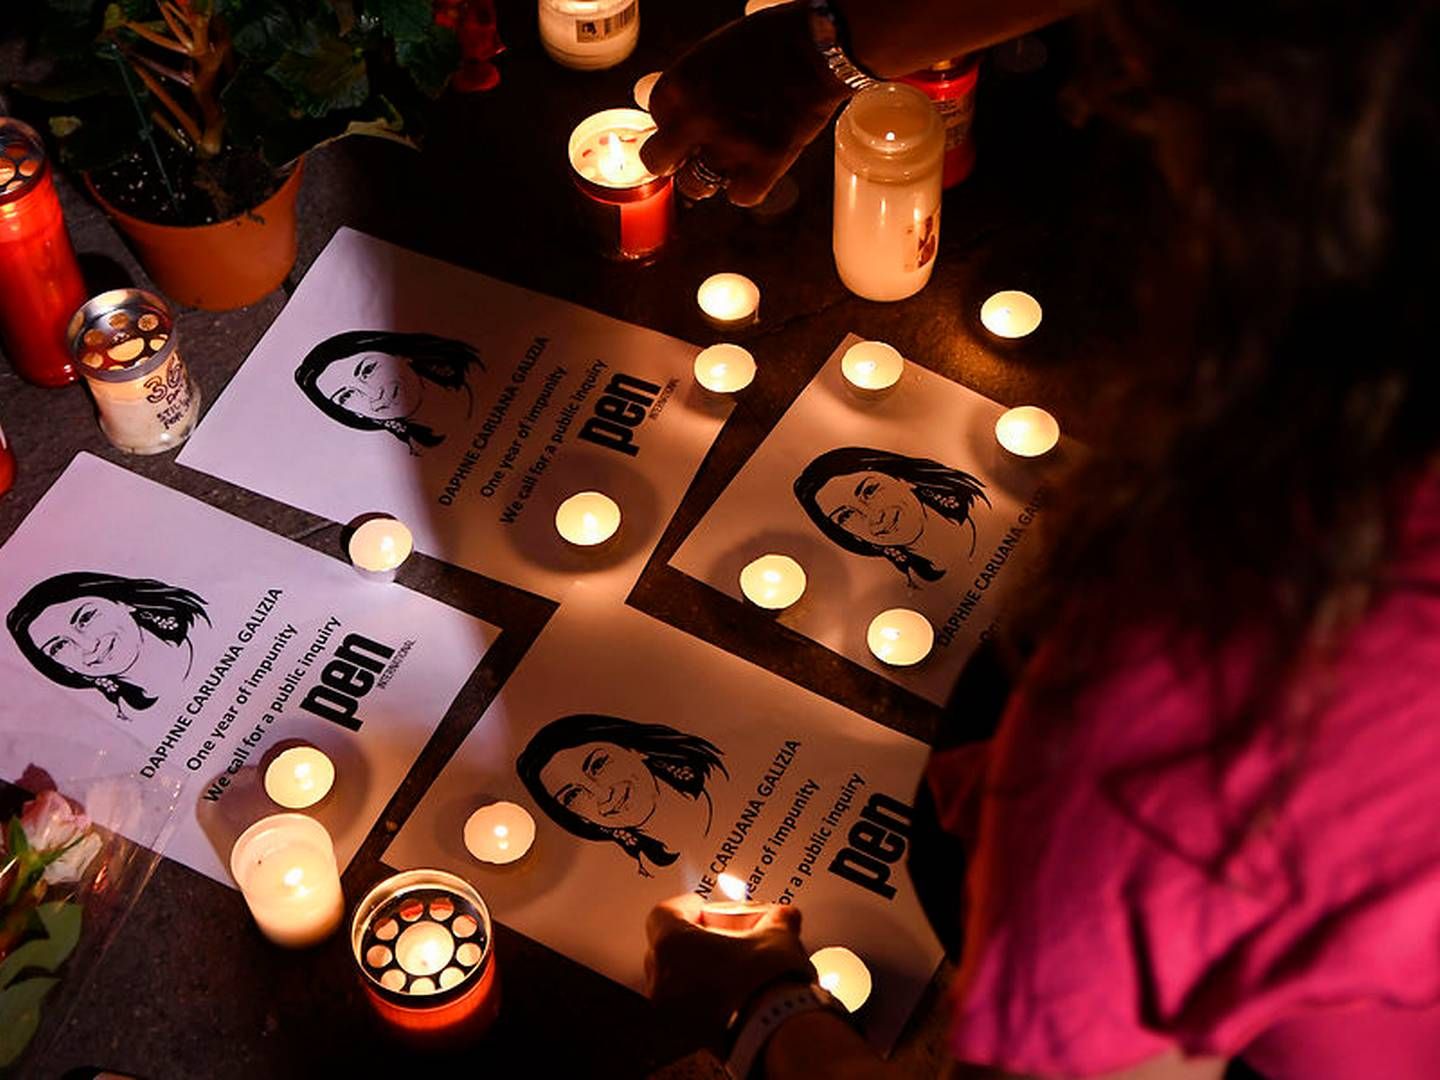 Den maltesiske journalist Daphne Caruana Galizia er blandt de journalister, der er blevet dræbt af organiserede kriminelle de seneste to år. | Foto: Ritzau Scanpix/AP/Jonathan Borg